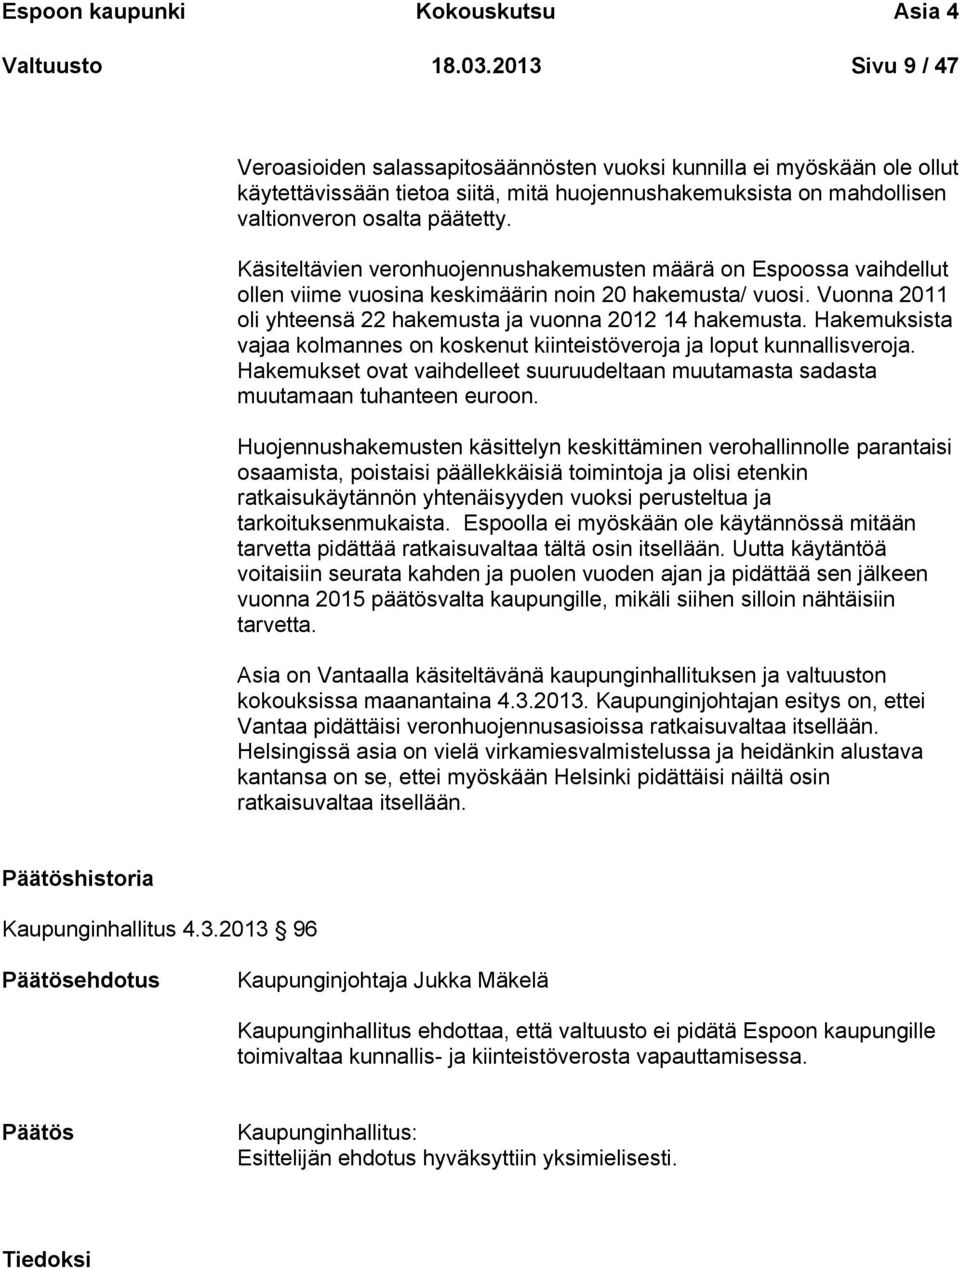 Käsiteltävien veronhuojennushakemusten määrä on Espoossa vaihdellut ollen viime vuosina keskimäärin noin 20 hakemusta/ vuosi. Vuonna 2011 oli yhteensä 22 hakemusta ja vuonna 2012 14 hakemusta.